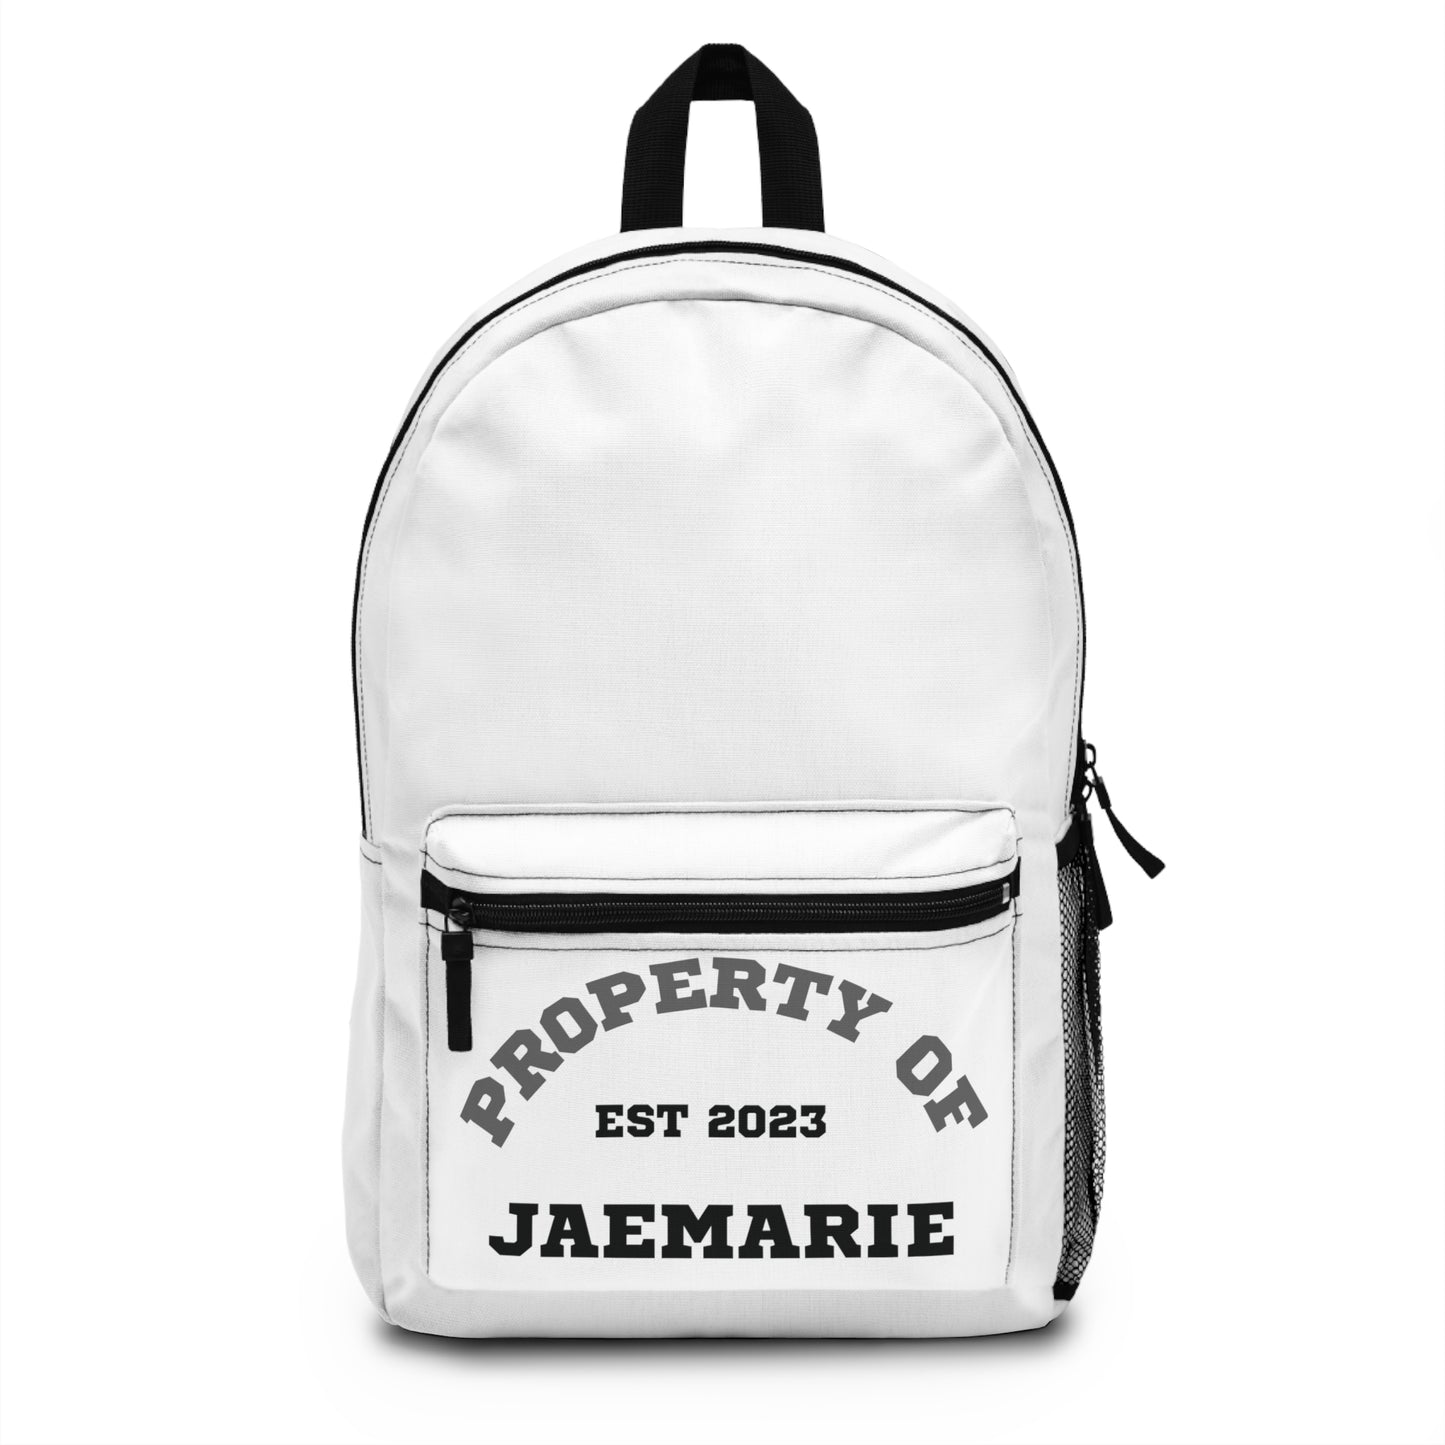 Property of JaeMarie Backpack